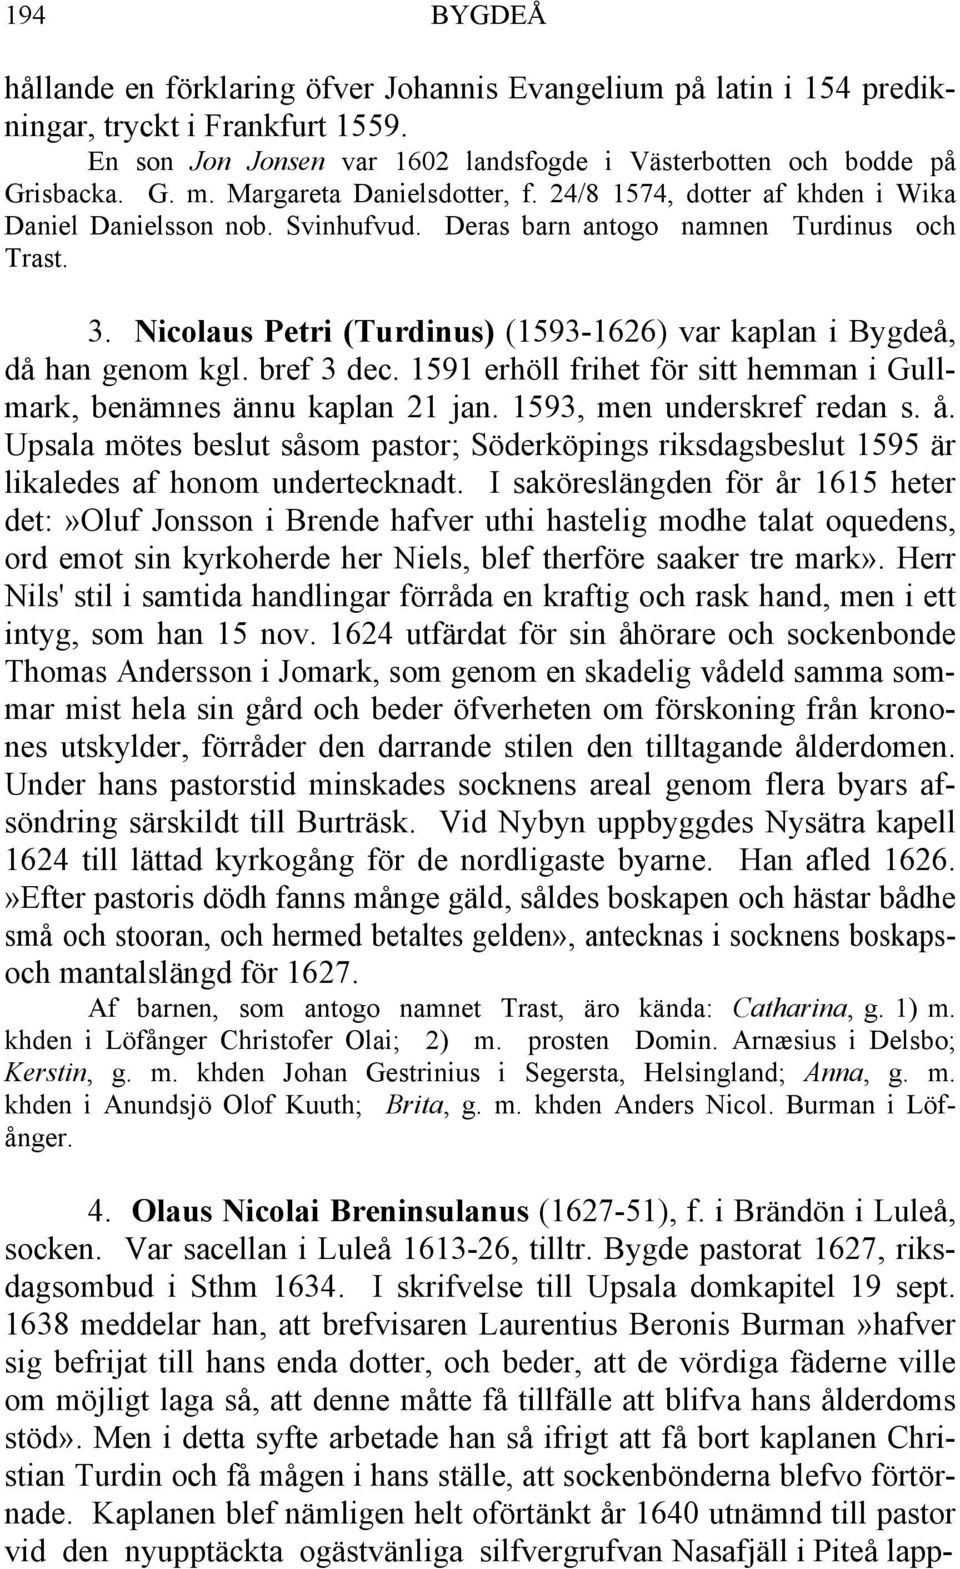 Nicolaus Petri (Turdinus) (1593-1626) var kaplan i Bygdeå, då han genom kgl. bref 3 dec. 1591 erhöll frihet för sitt hemman i Gullmark, benämnes ännu kaplan 21 jan. 1593, men underskref redan s. å.